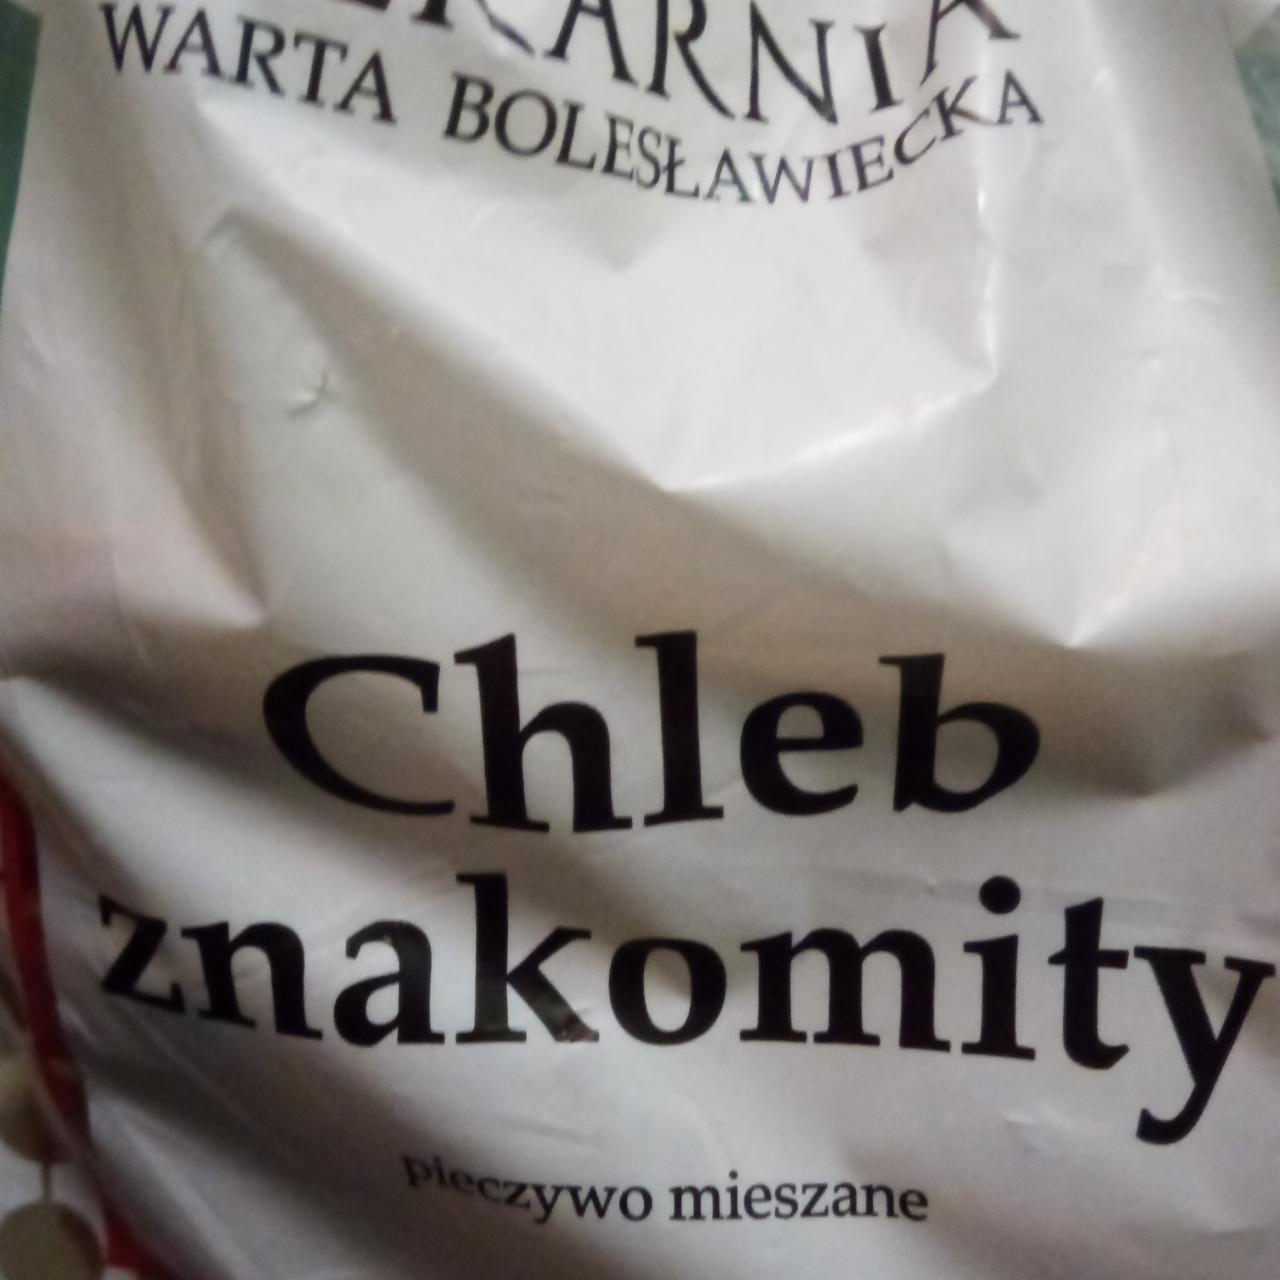 Fotografie - Chleb znakomity Piekarnia Warta Bolesławiecka